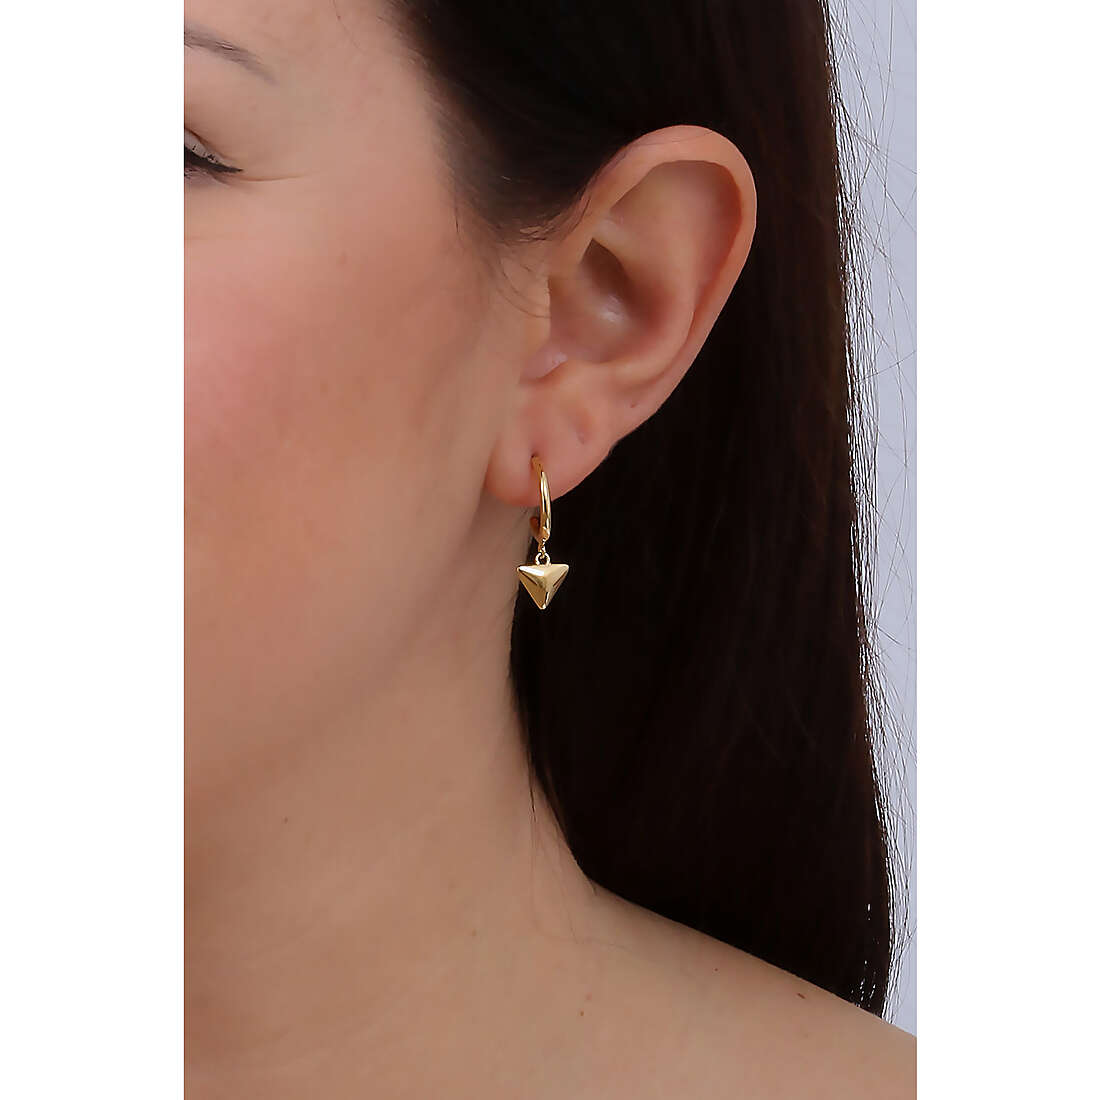 Morellato earrings Trilliant woman SAWY13 wearing